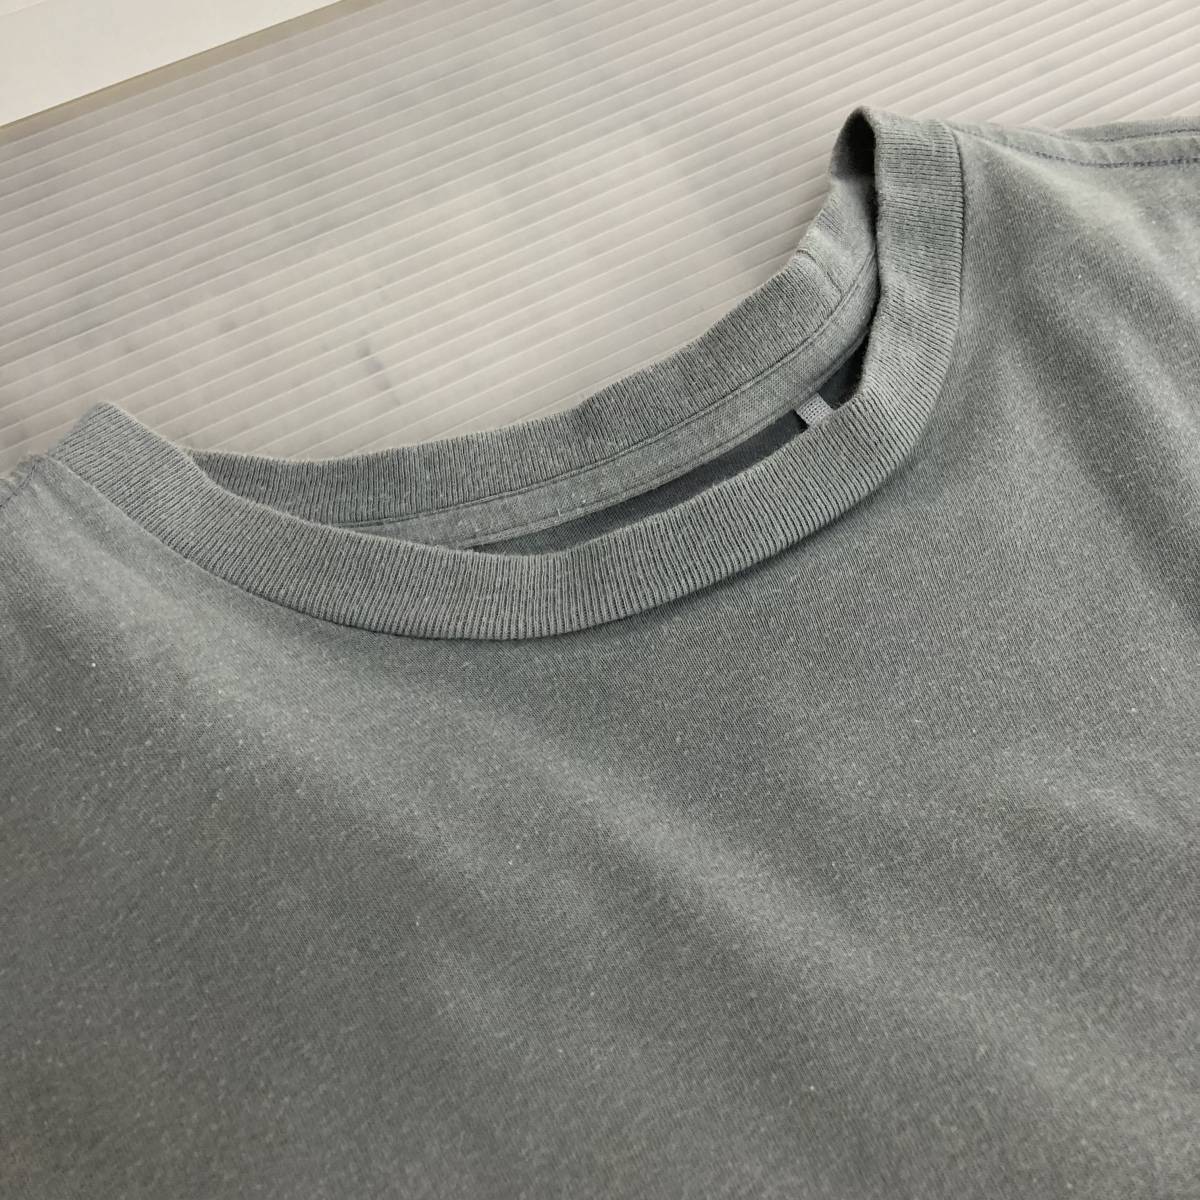 ファイントラック finetrack Tシャツ M 衣類 ウエア 登山 アウトドア 半袖 tmc02028725_画像2